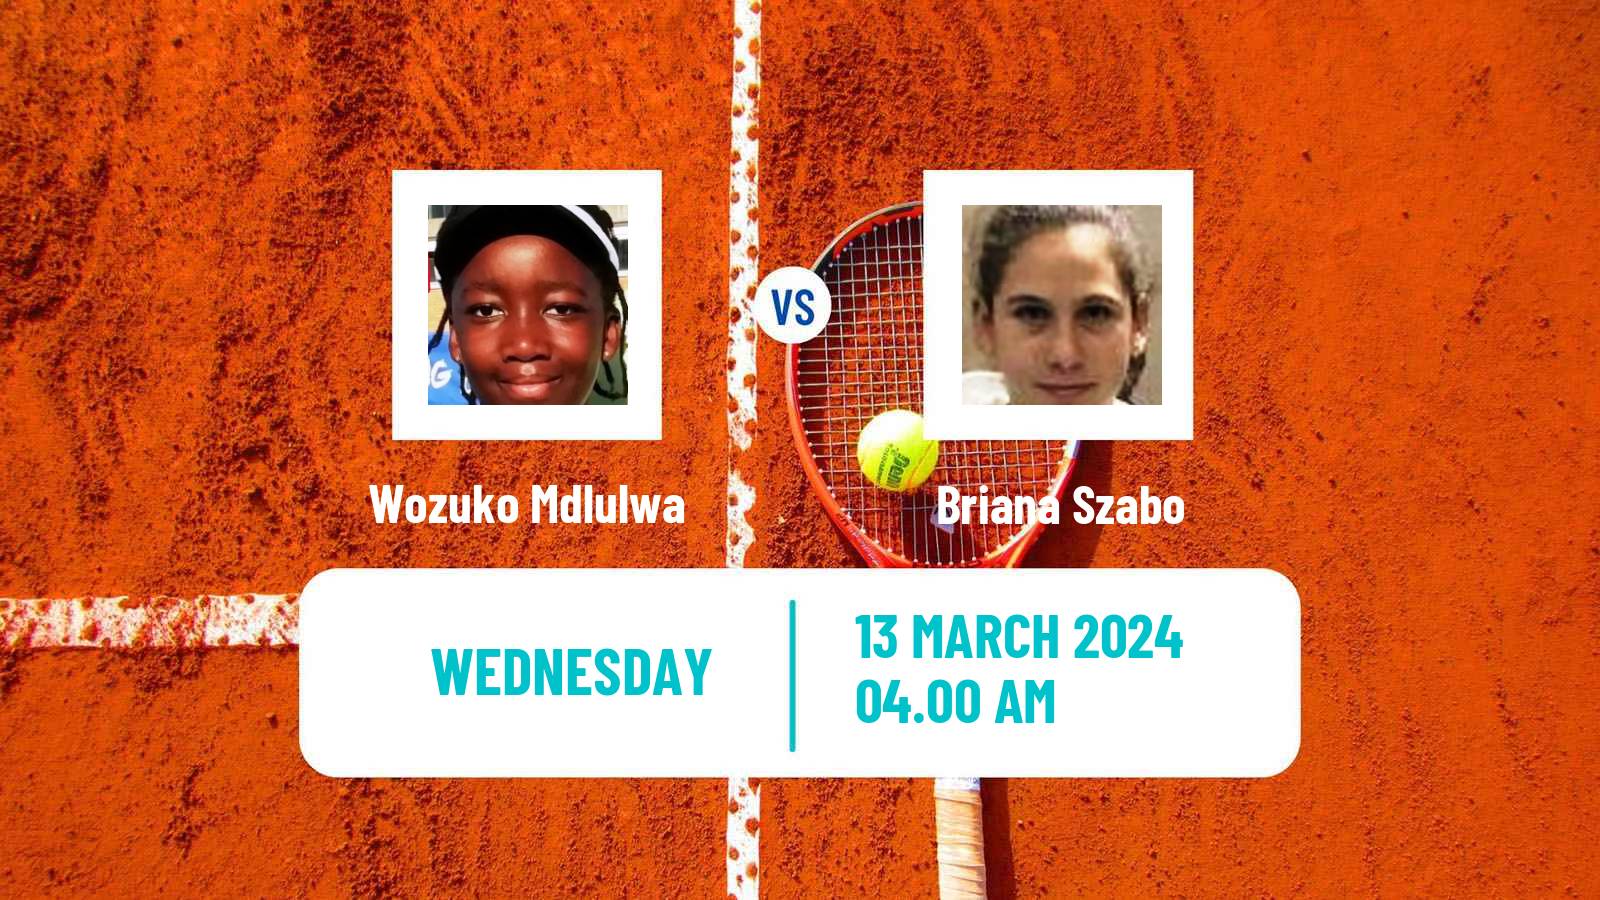 Tennis ITF W15 Heraklion 2 Women Wozuko Mdlulwa - Briana Szabo